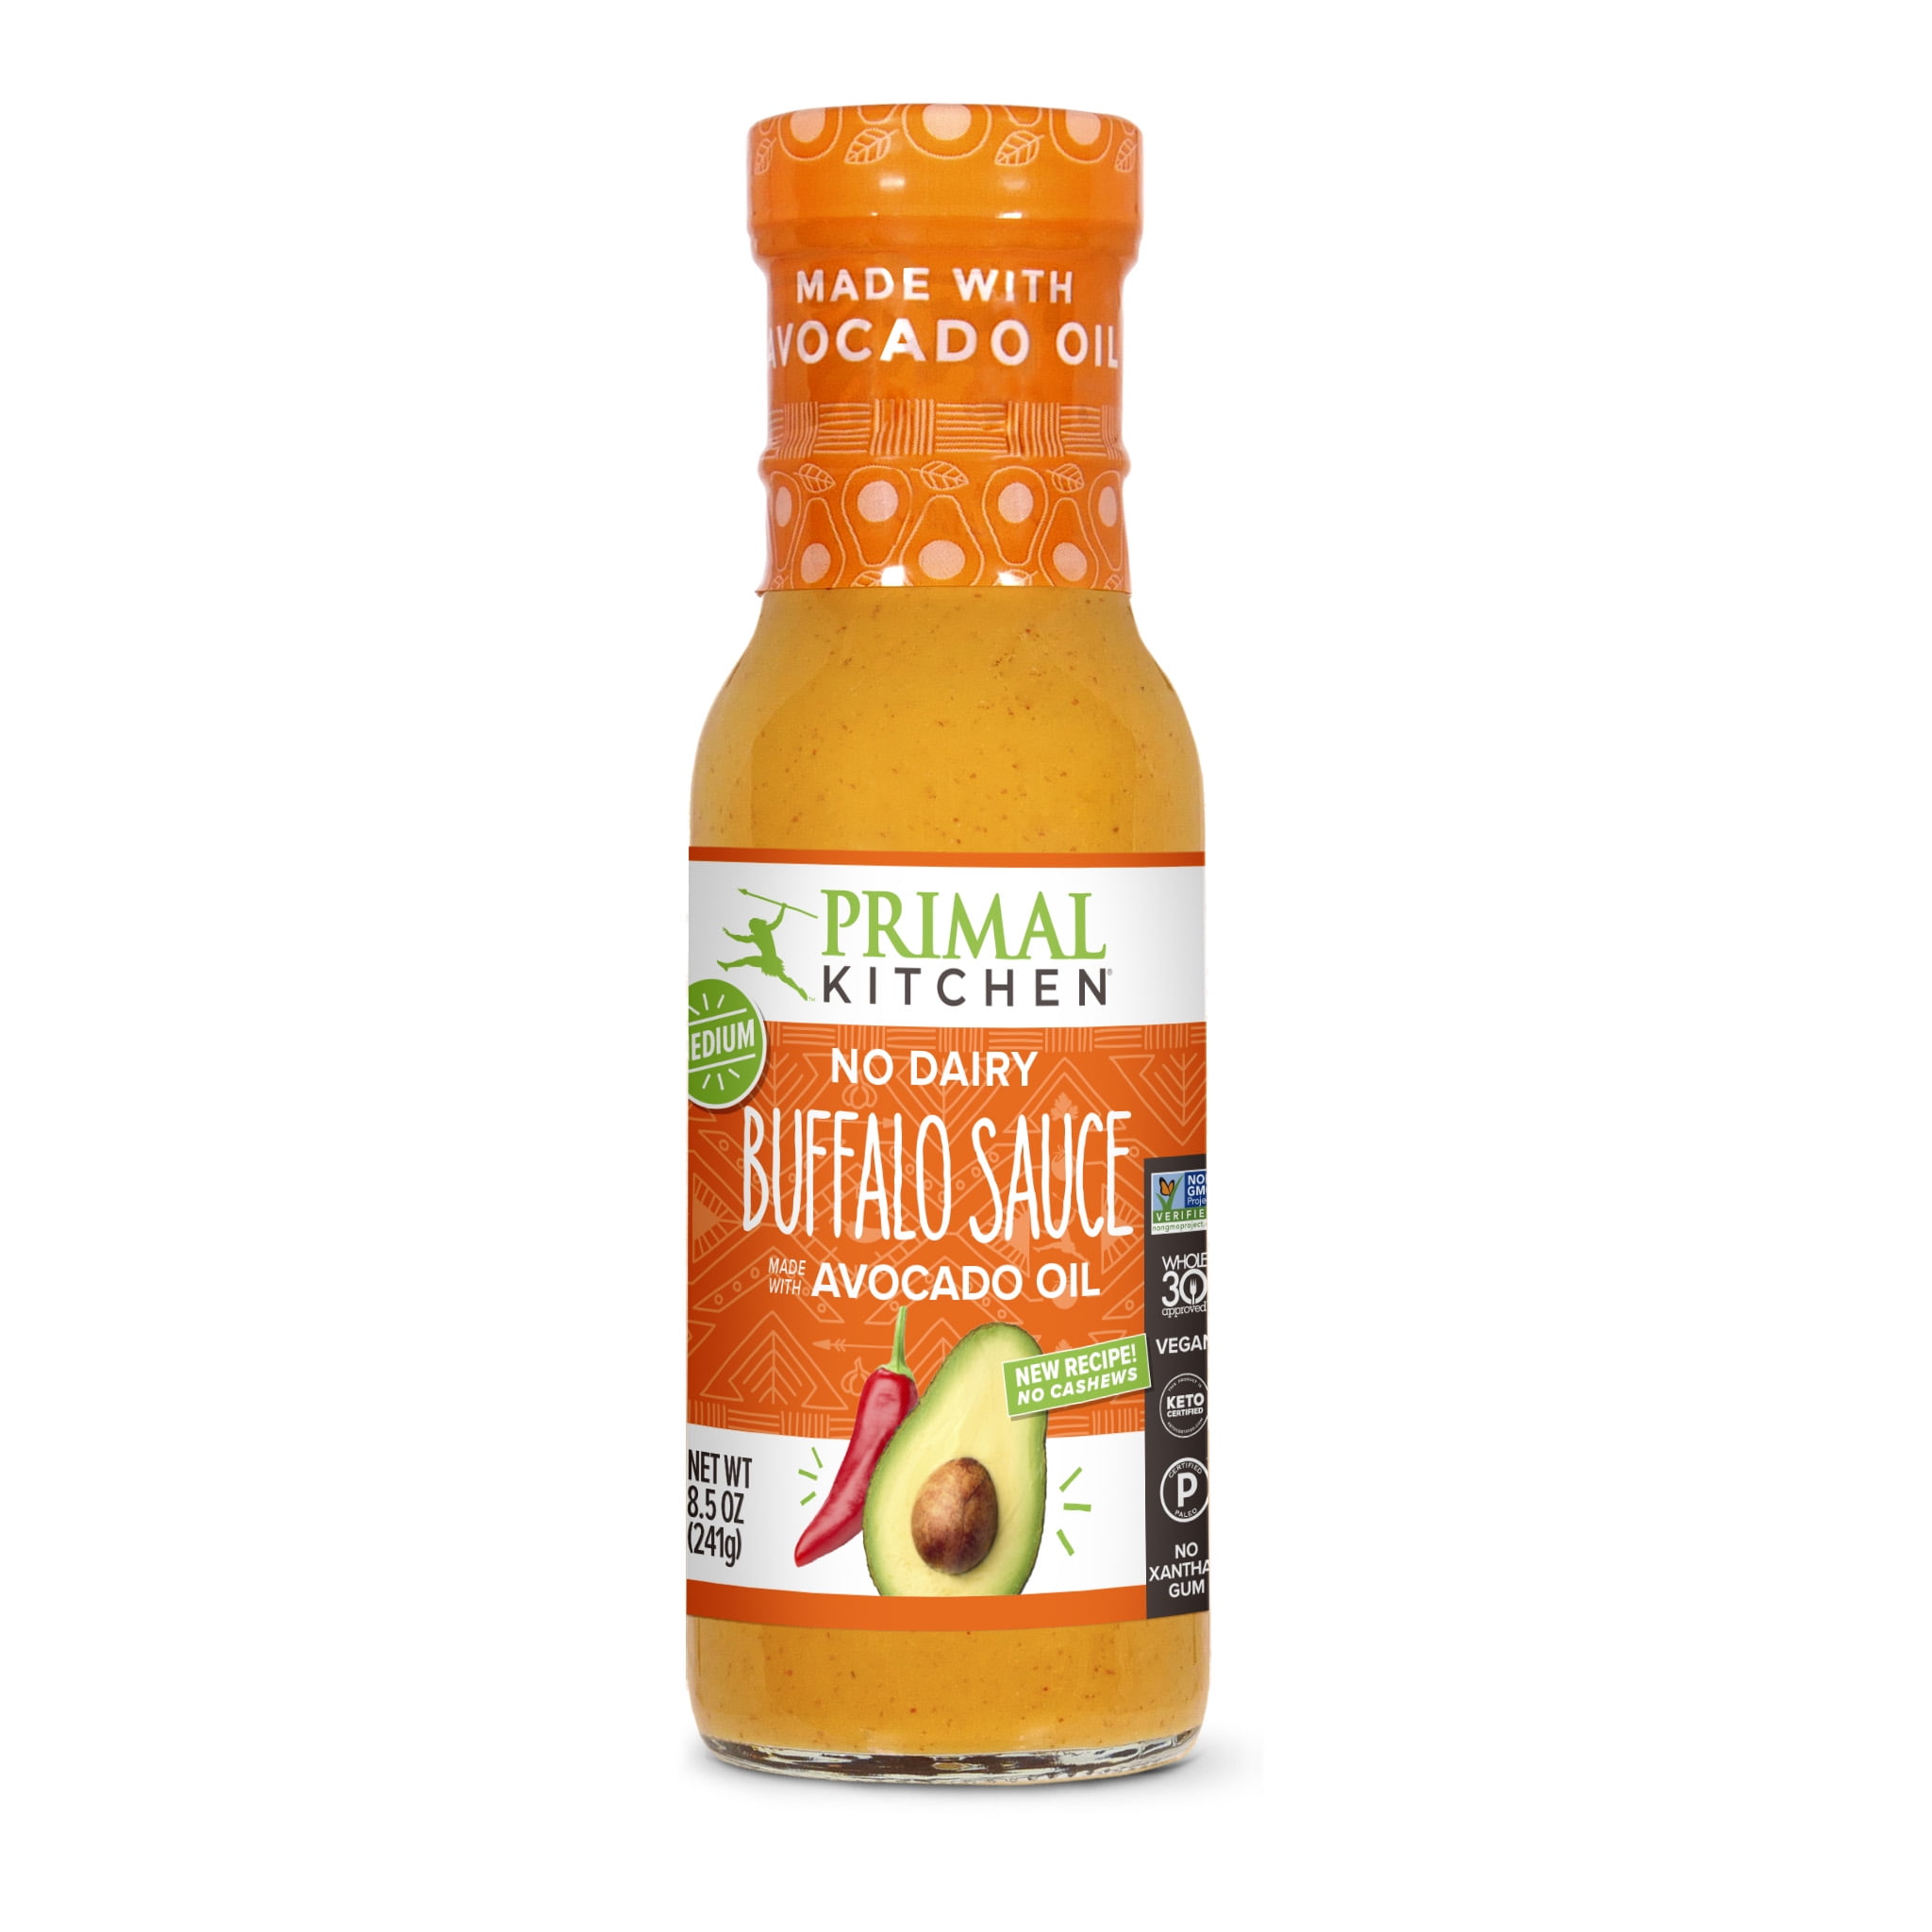 Primal Kitchen Buffalo Sauce, Medium Heat - 8.5 oz